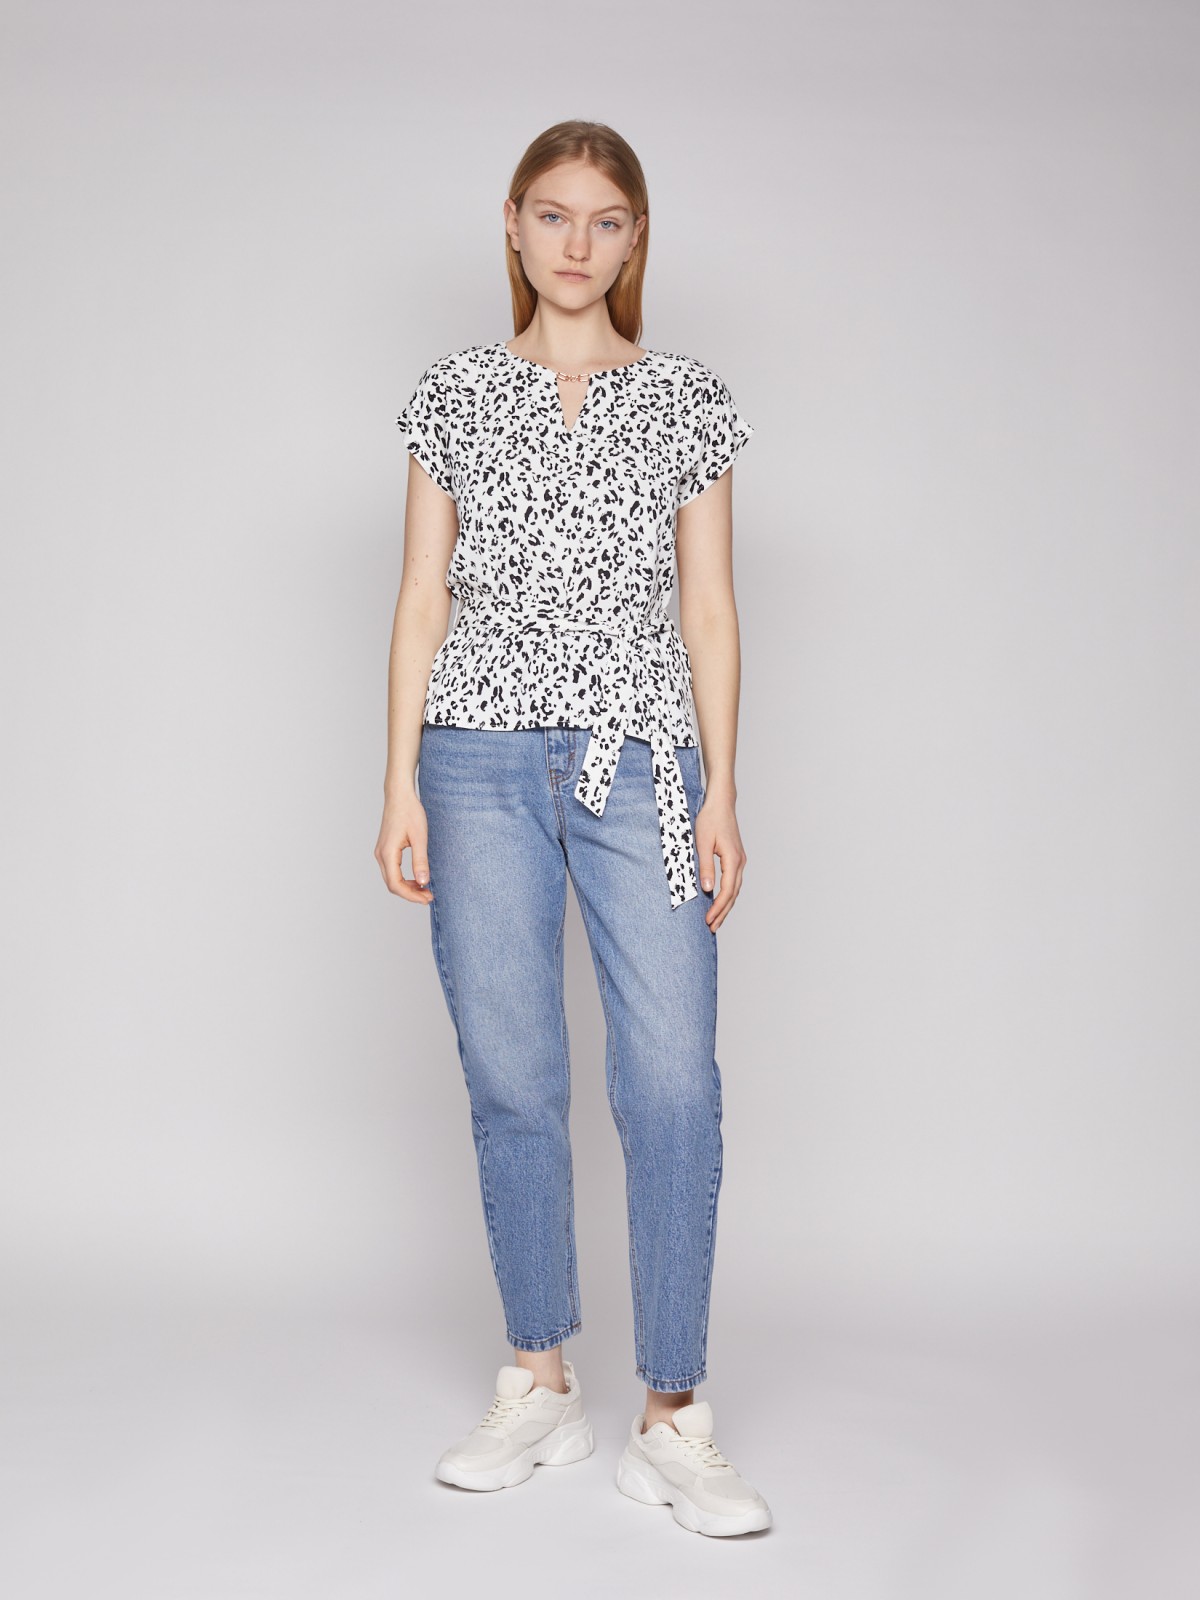 Принтованная блузка с поясом zolla 022131259043, цвет белый, размер XS - фото 2